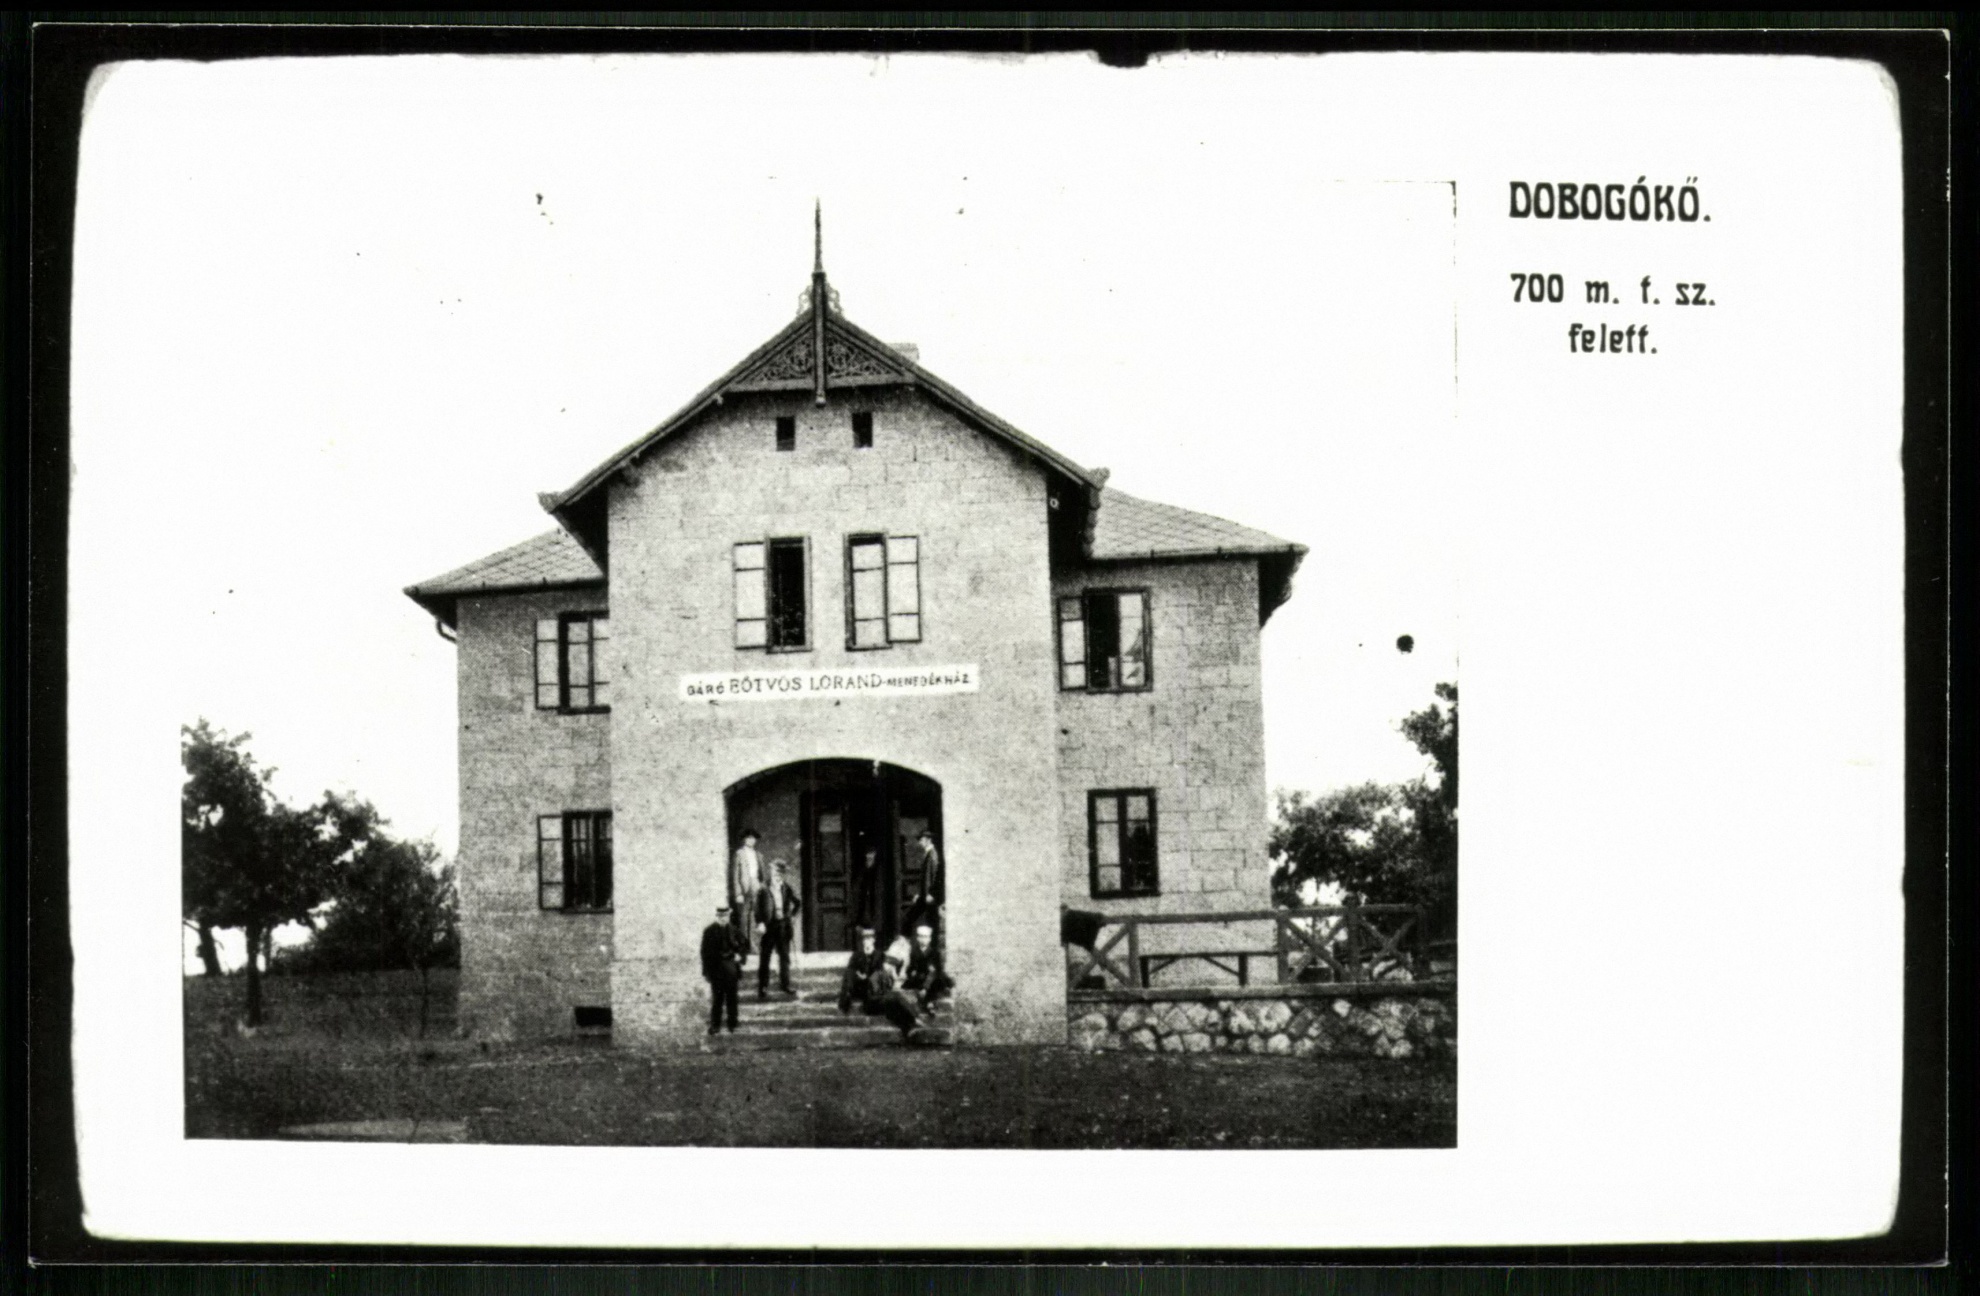 Dobogókő 700 m t.sz. felett. Báró Eötvös Loránd menedékház (Magyar Kereskedelmi és Vendéglátóipari Múzeum CC BY-NC-ND)